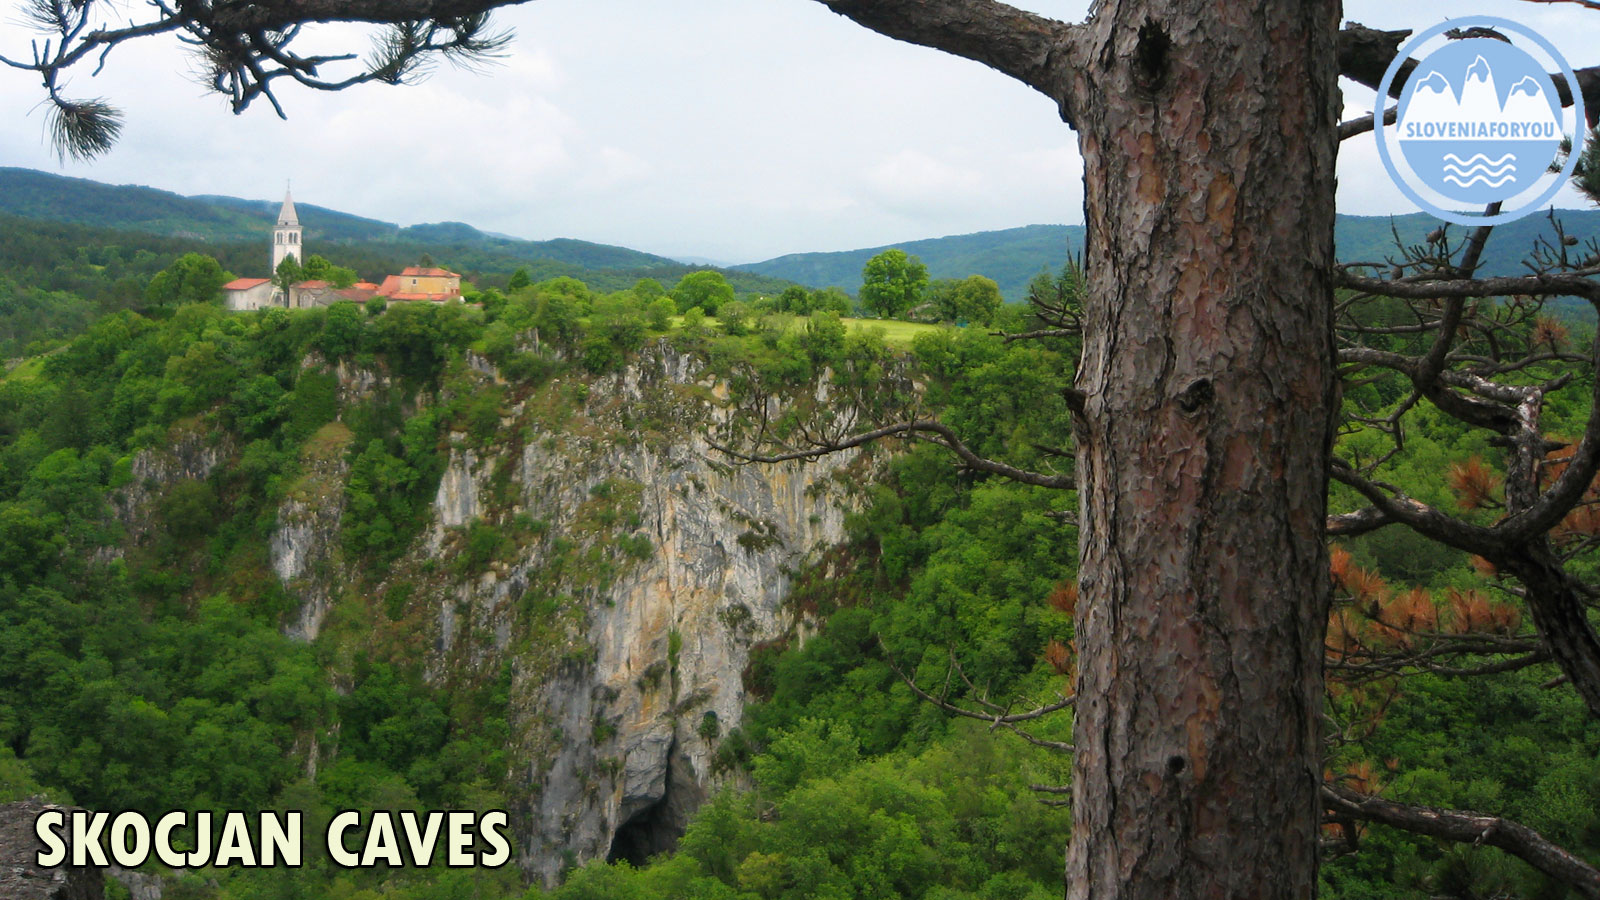 Škocjan Caves, Sloveniaforyou